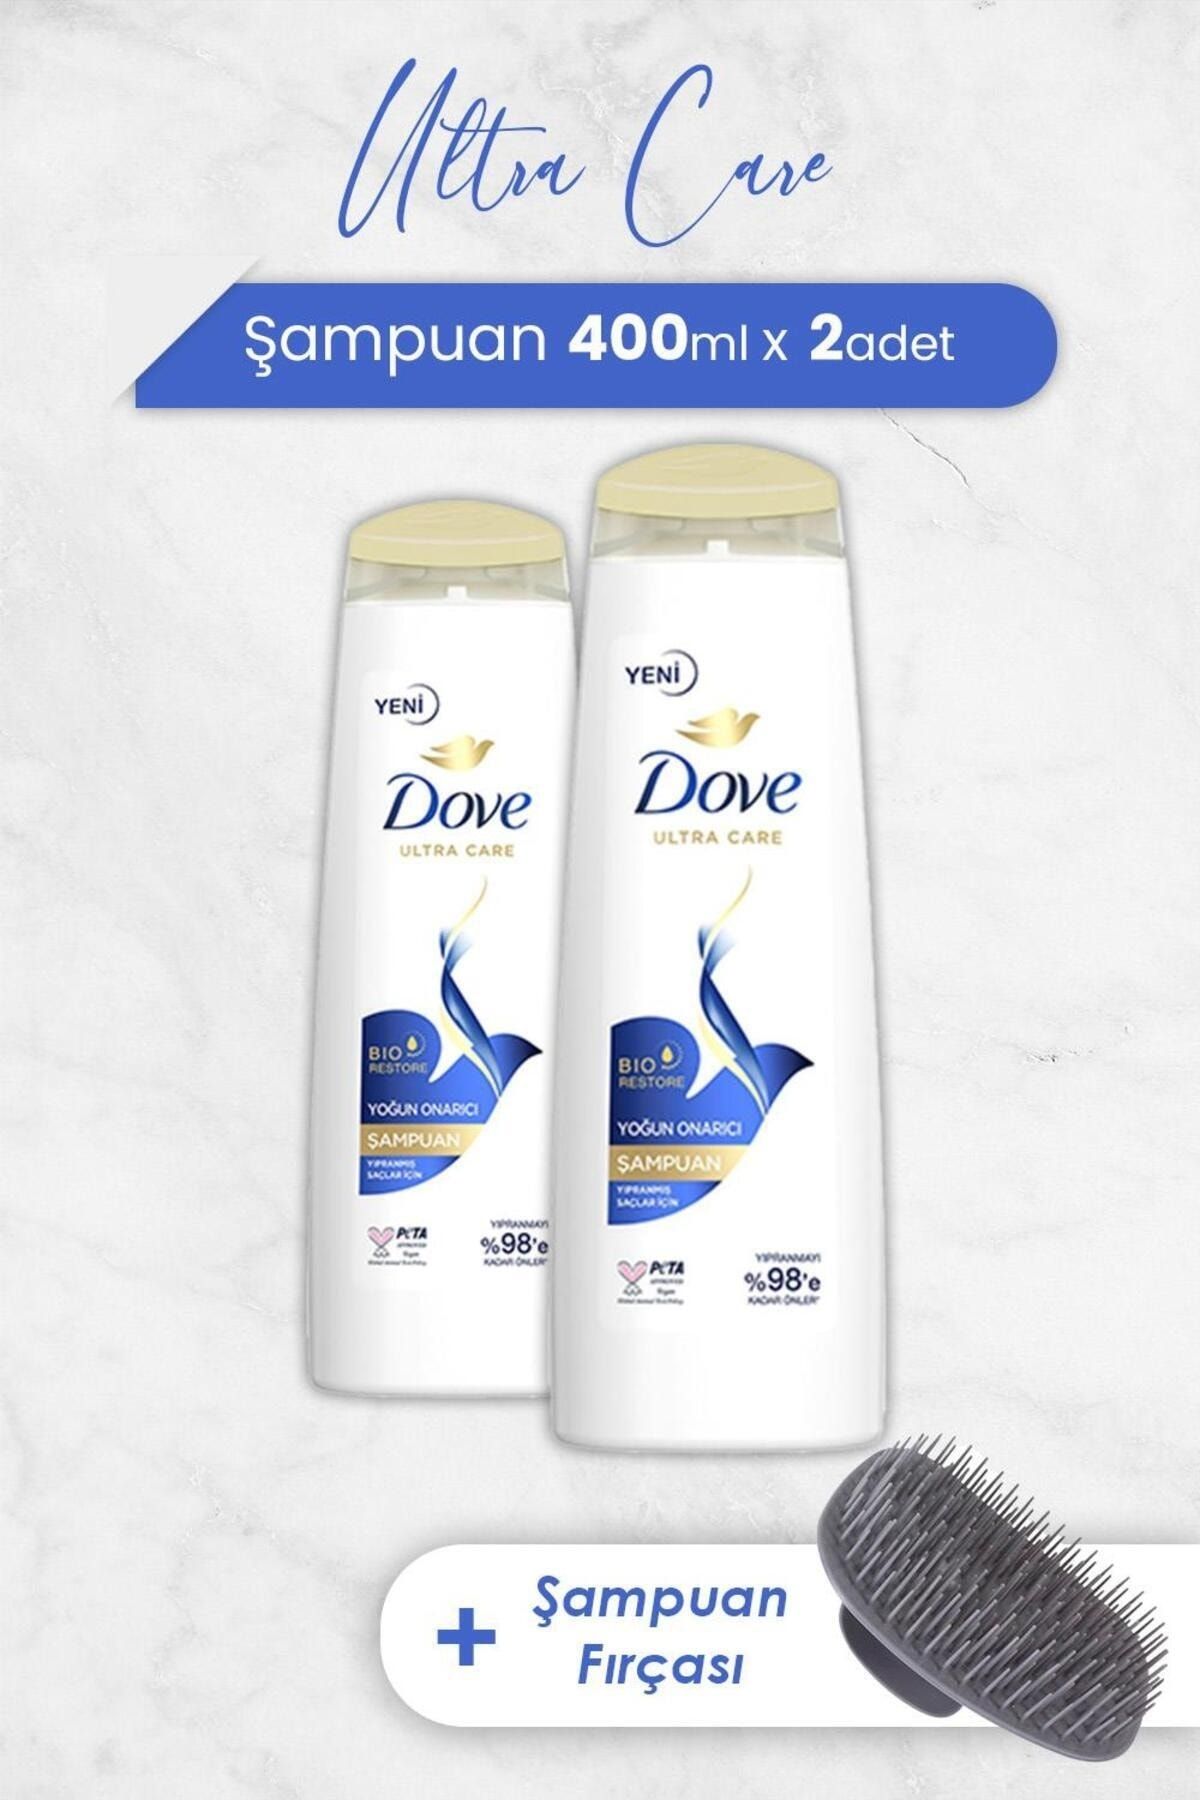 Dove Ultra Care Yoğun Onarıcı Şampuan 400 ml x 2 Adet ve Şampuan Fırçası